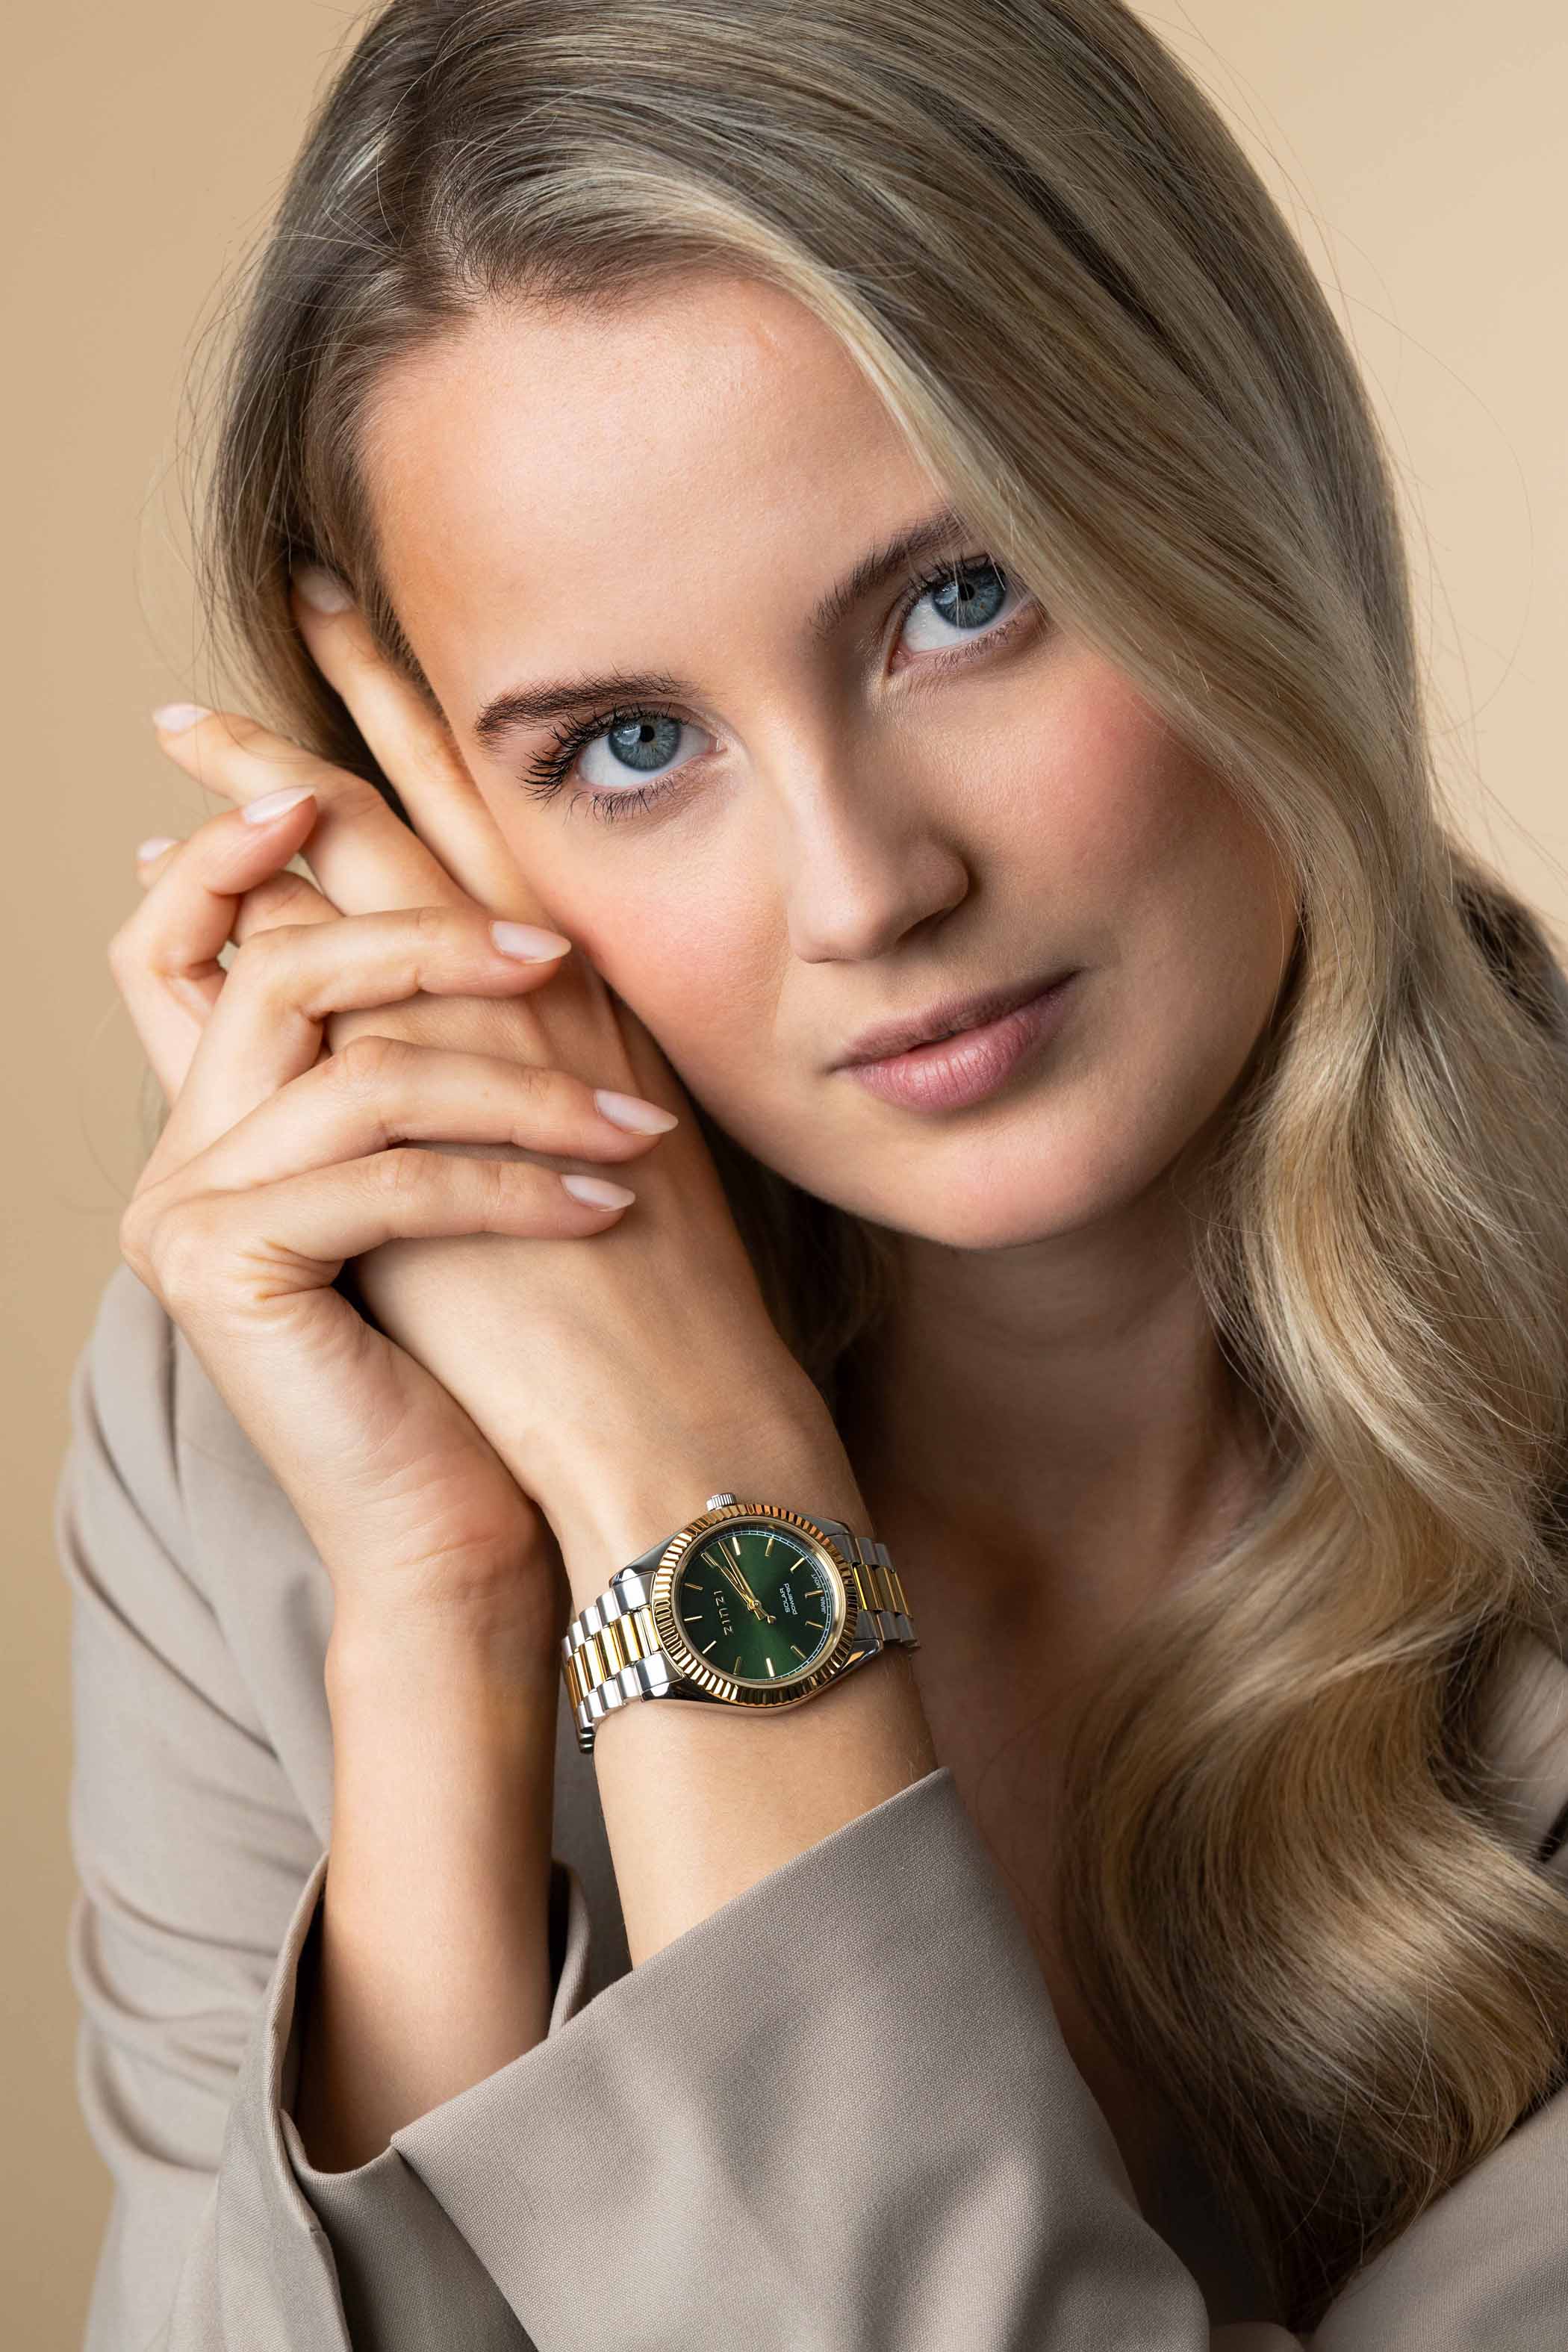 ZINZI Solaris horloge met groene wijzerplaat, stalen bicolor kast 35mm en stalen bicolor band met clip-sluiting. Het Japanse uurwerk loopt op zon- en kunstlicht ZIW2135
